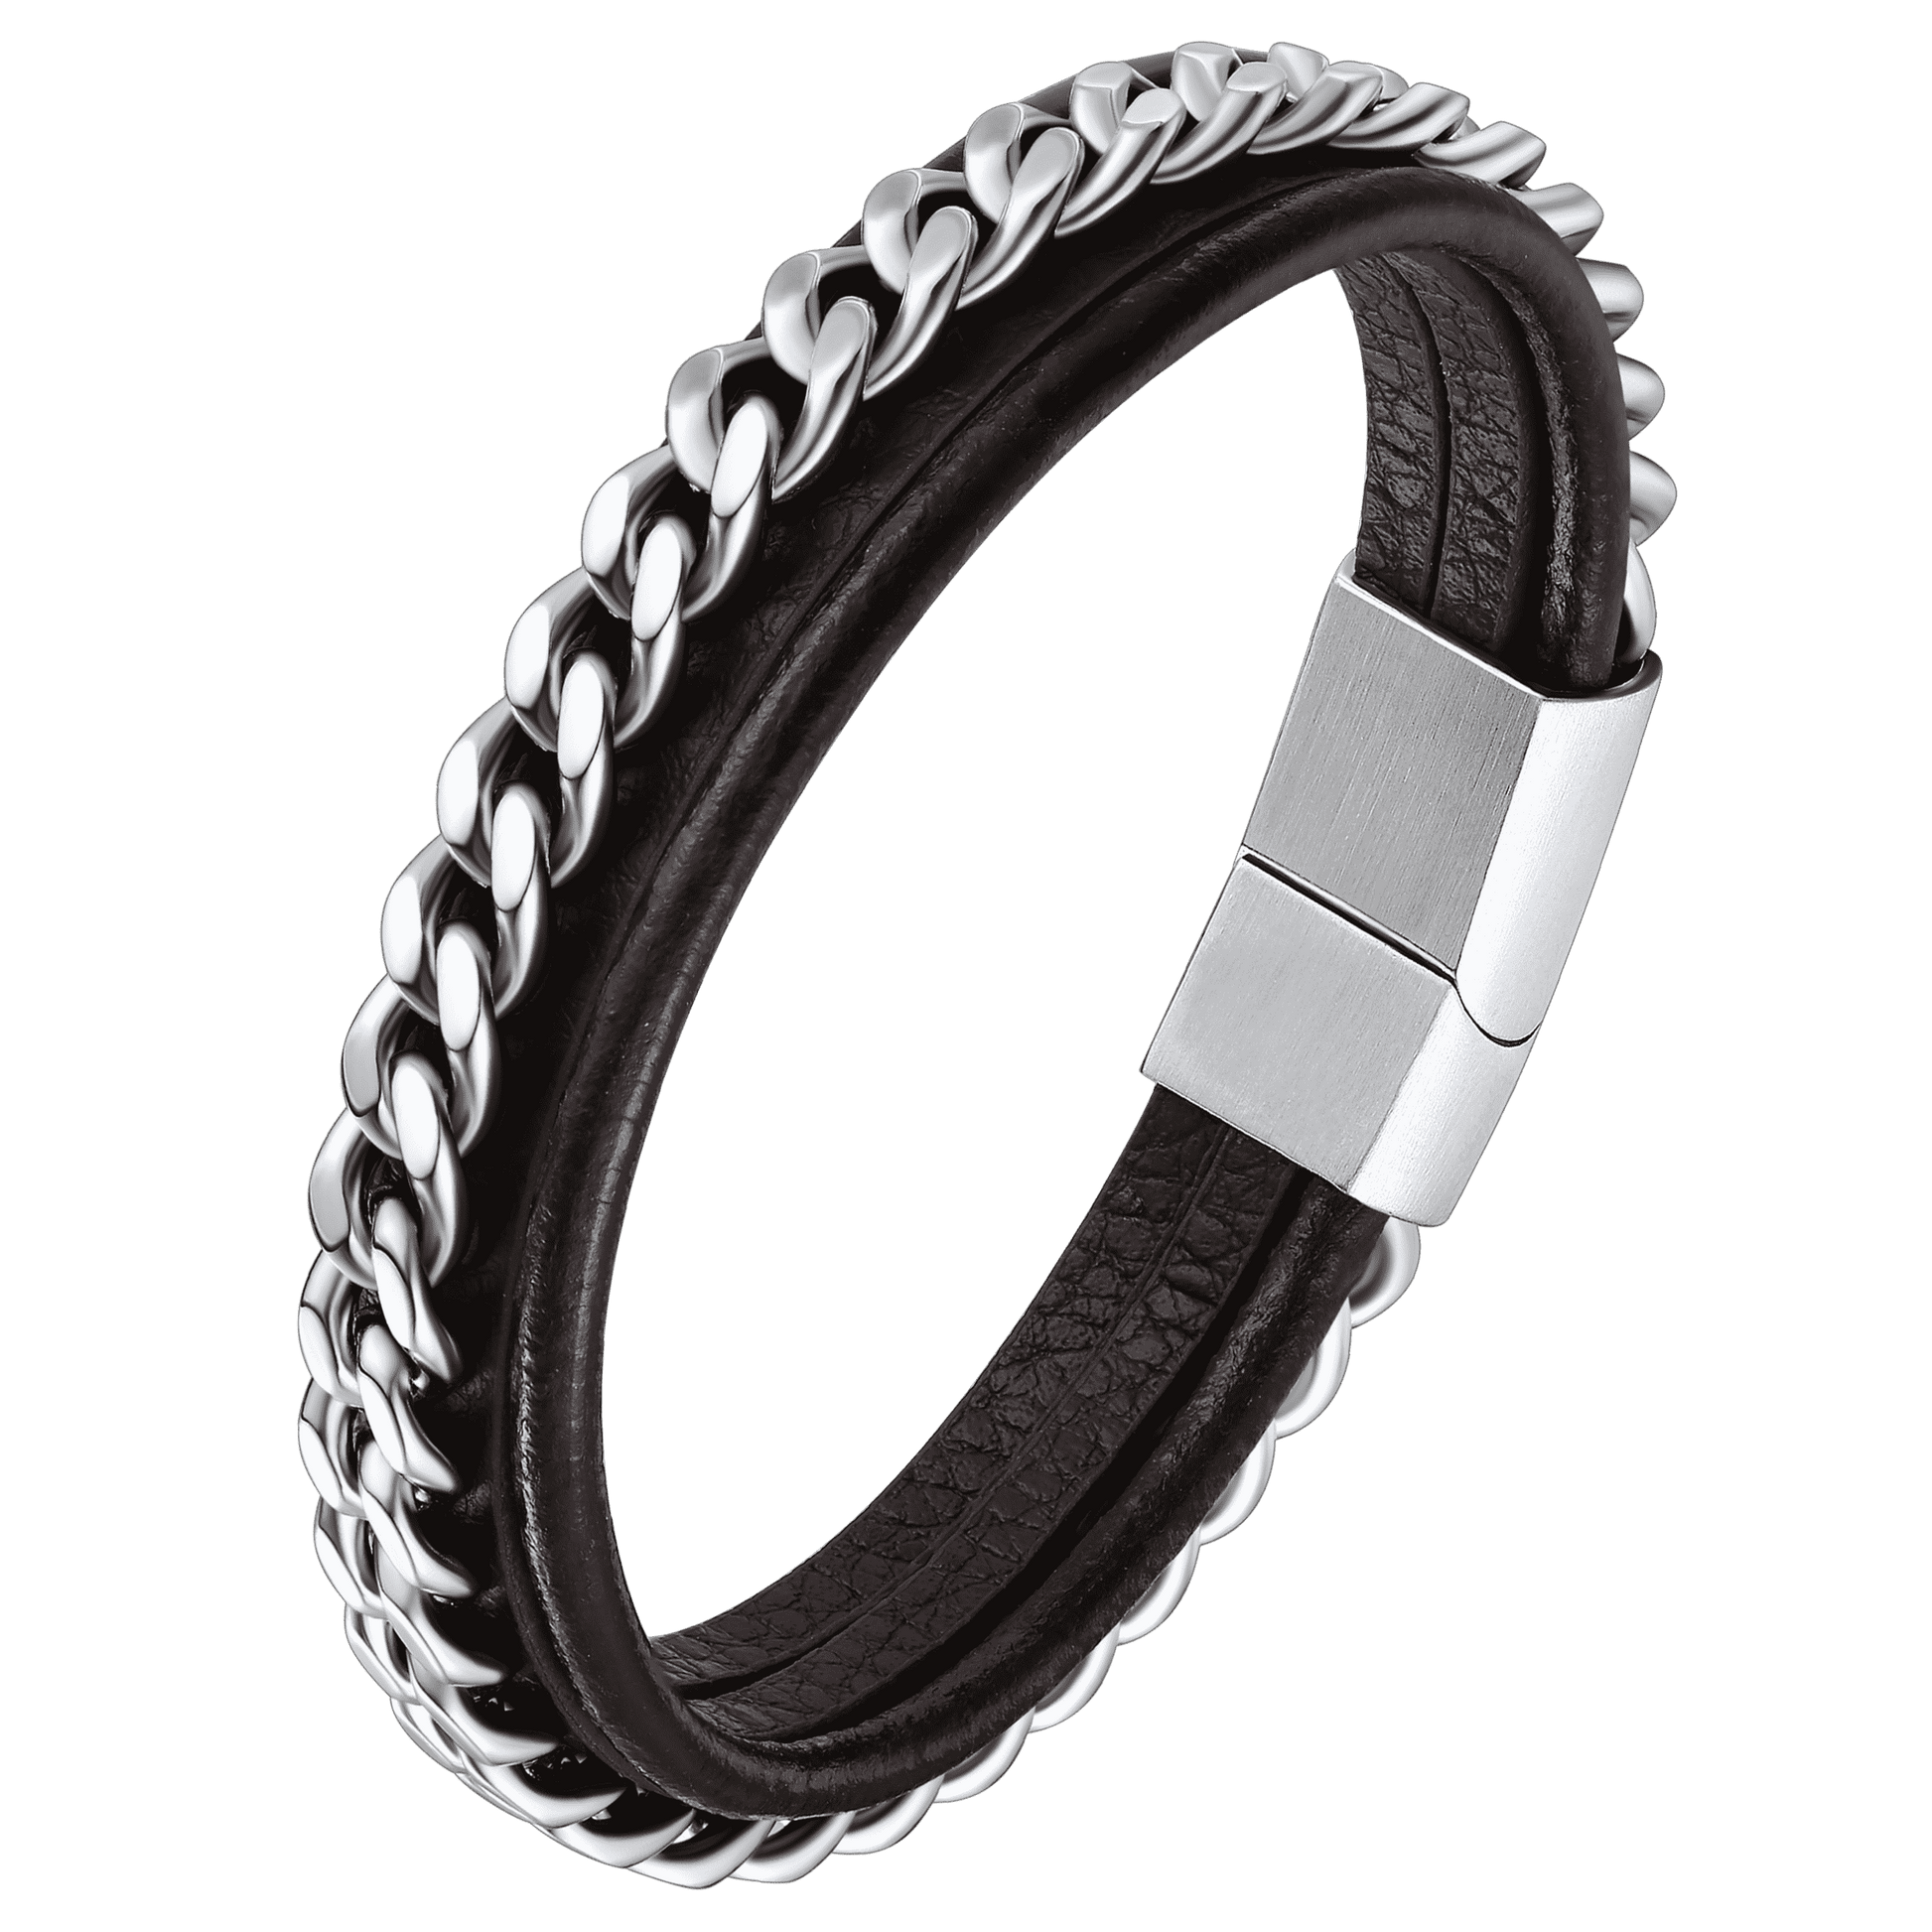 FaithHeart Black Braided Leather Bracelet Customized Cuff Wristband FaithHeart